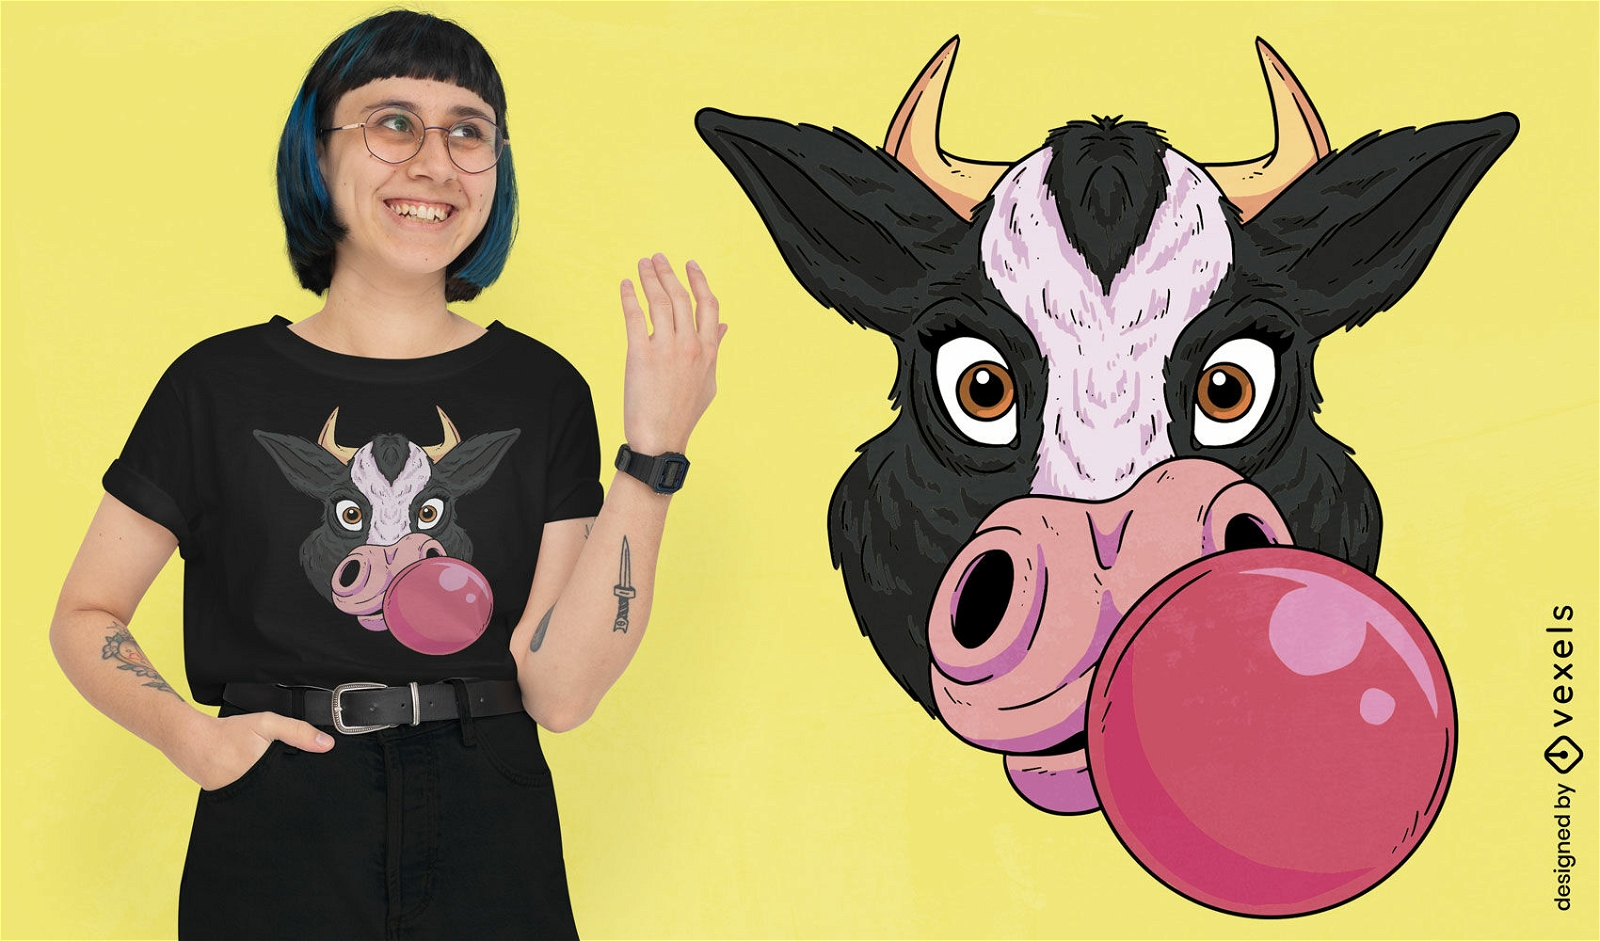 Bubble gum cow t-shirt design